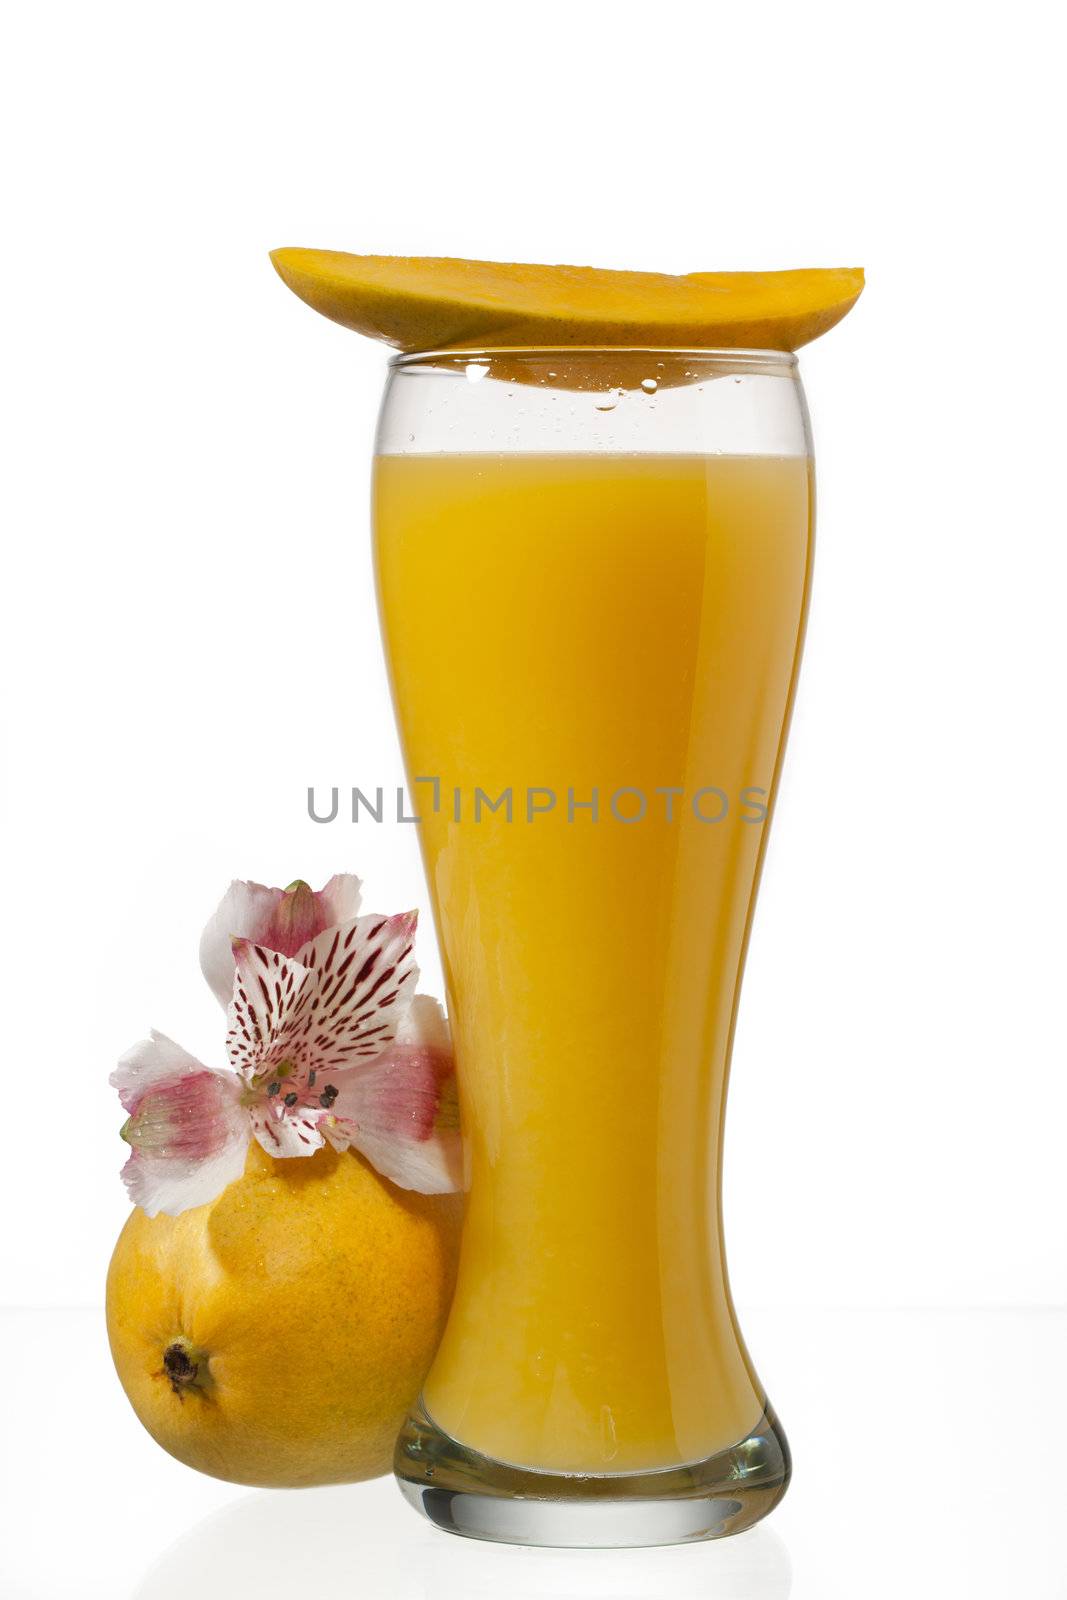 mango juice glass with slice of mango on top isolated on white background